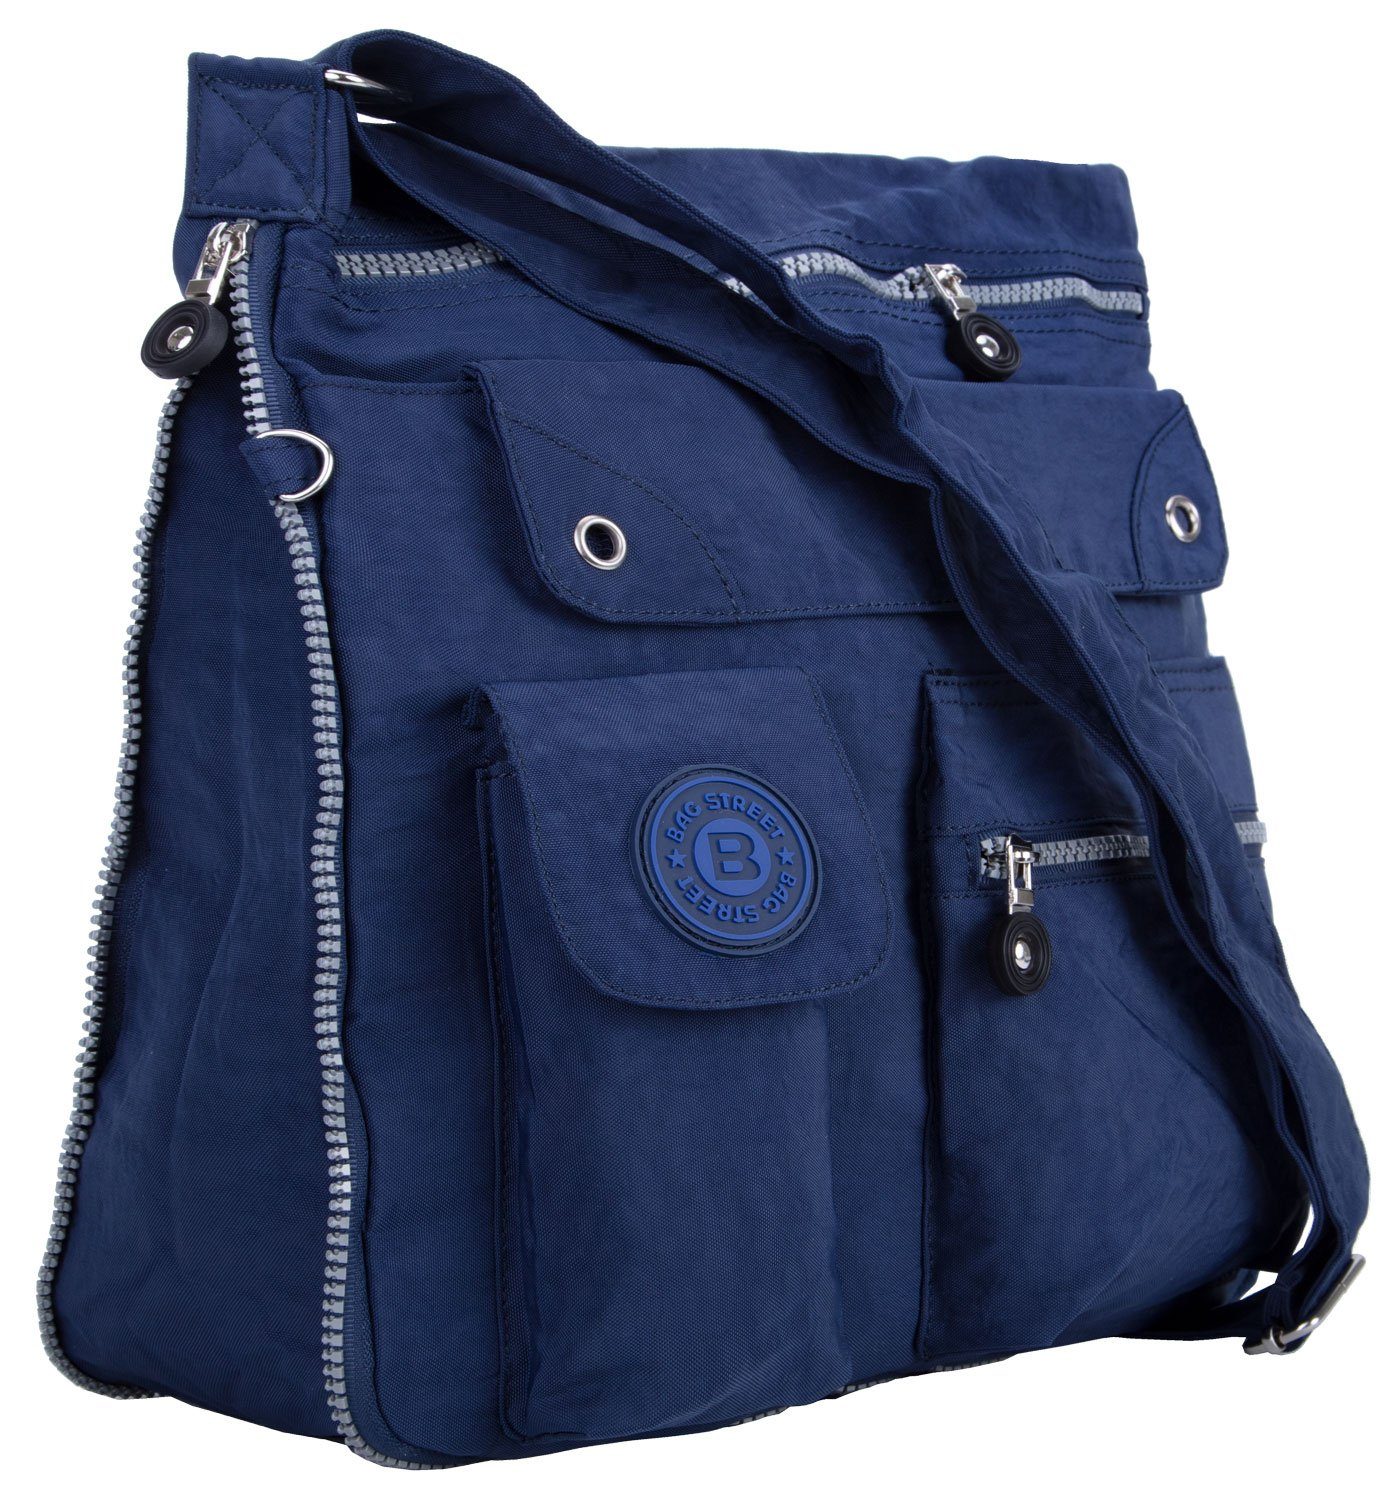 compagno Henkeltasche, Sportive Umhänge-Tasche mit viel Stauraum City-Tasche Bag Reise Urlaub Kuriertasche blau